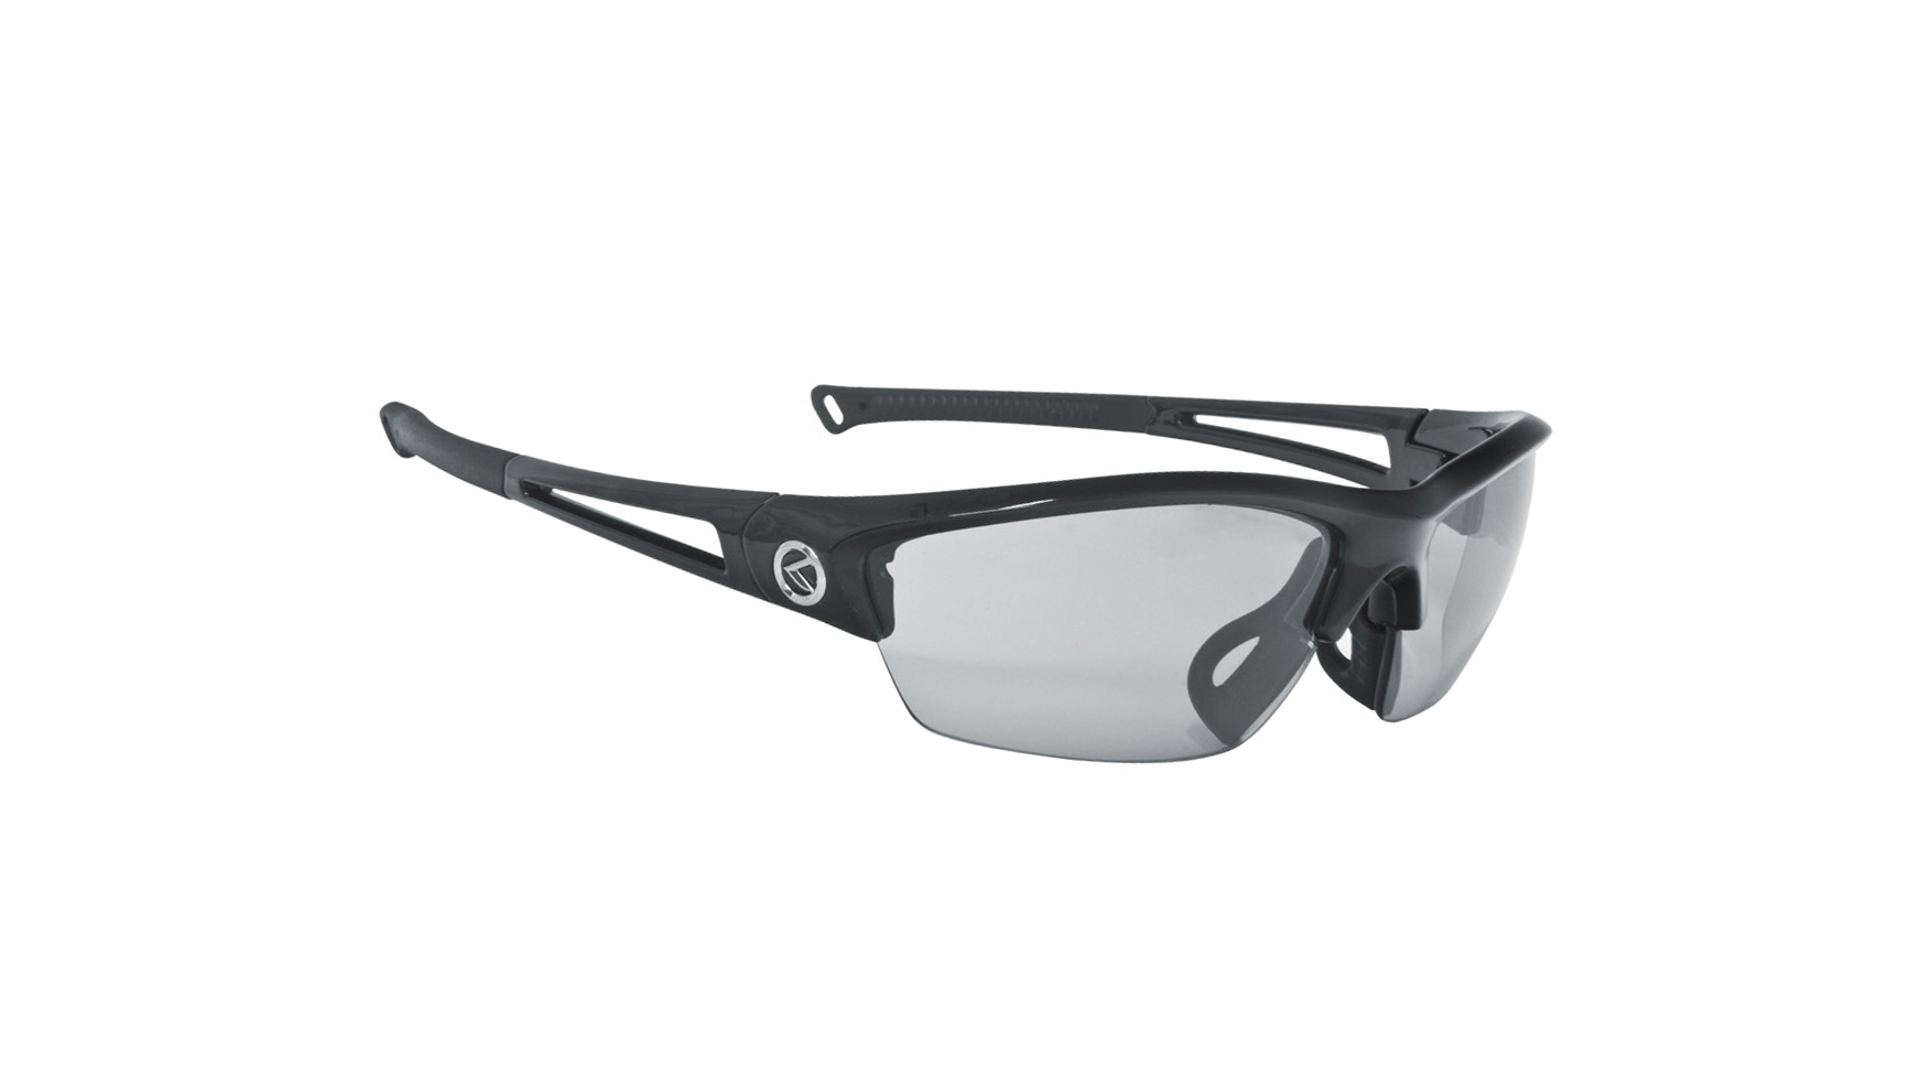 KLS Wraith Photochromic kerékpáros szemüveg, fényre sötétedő, Shiny Black